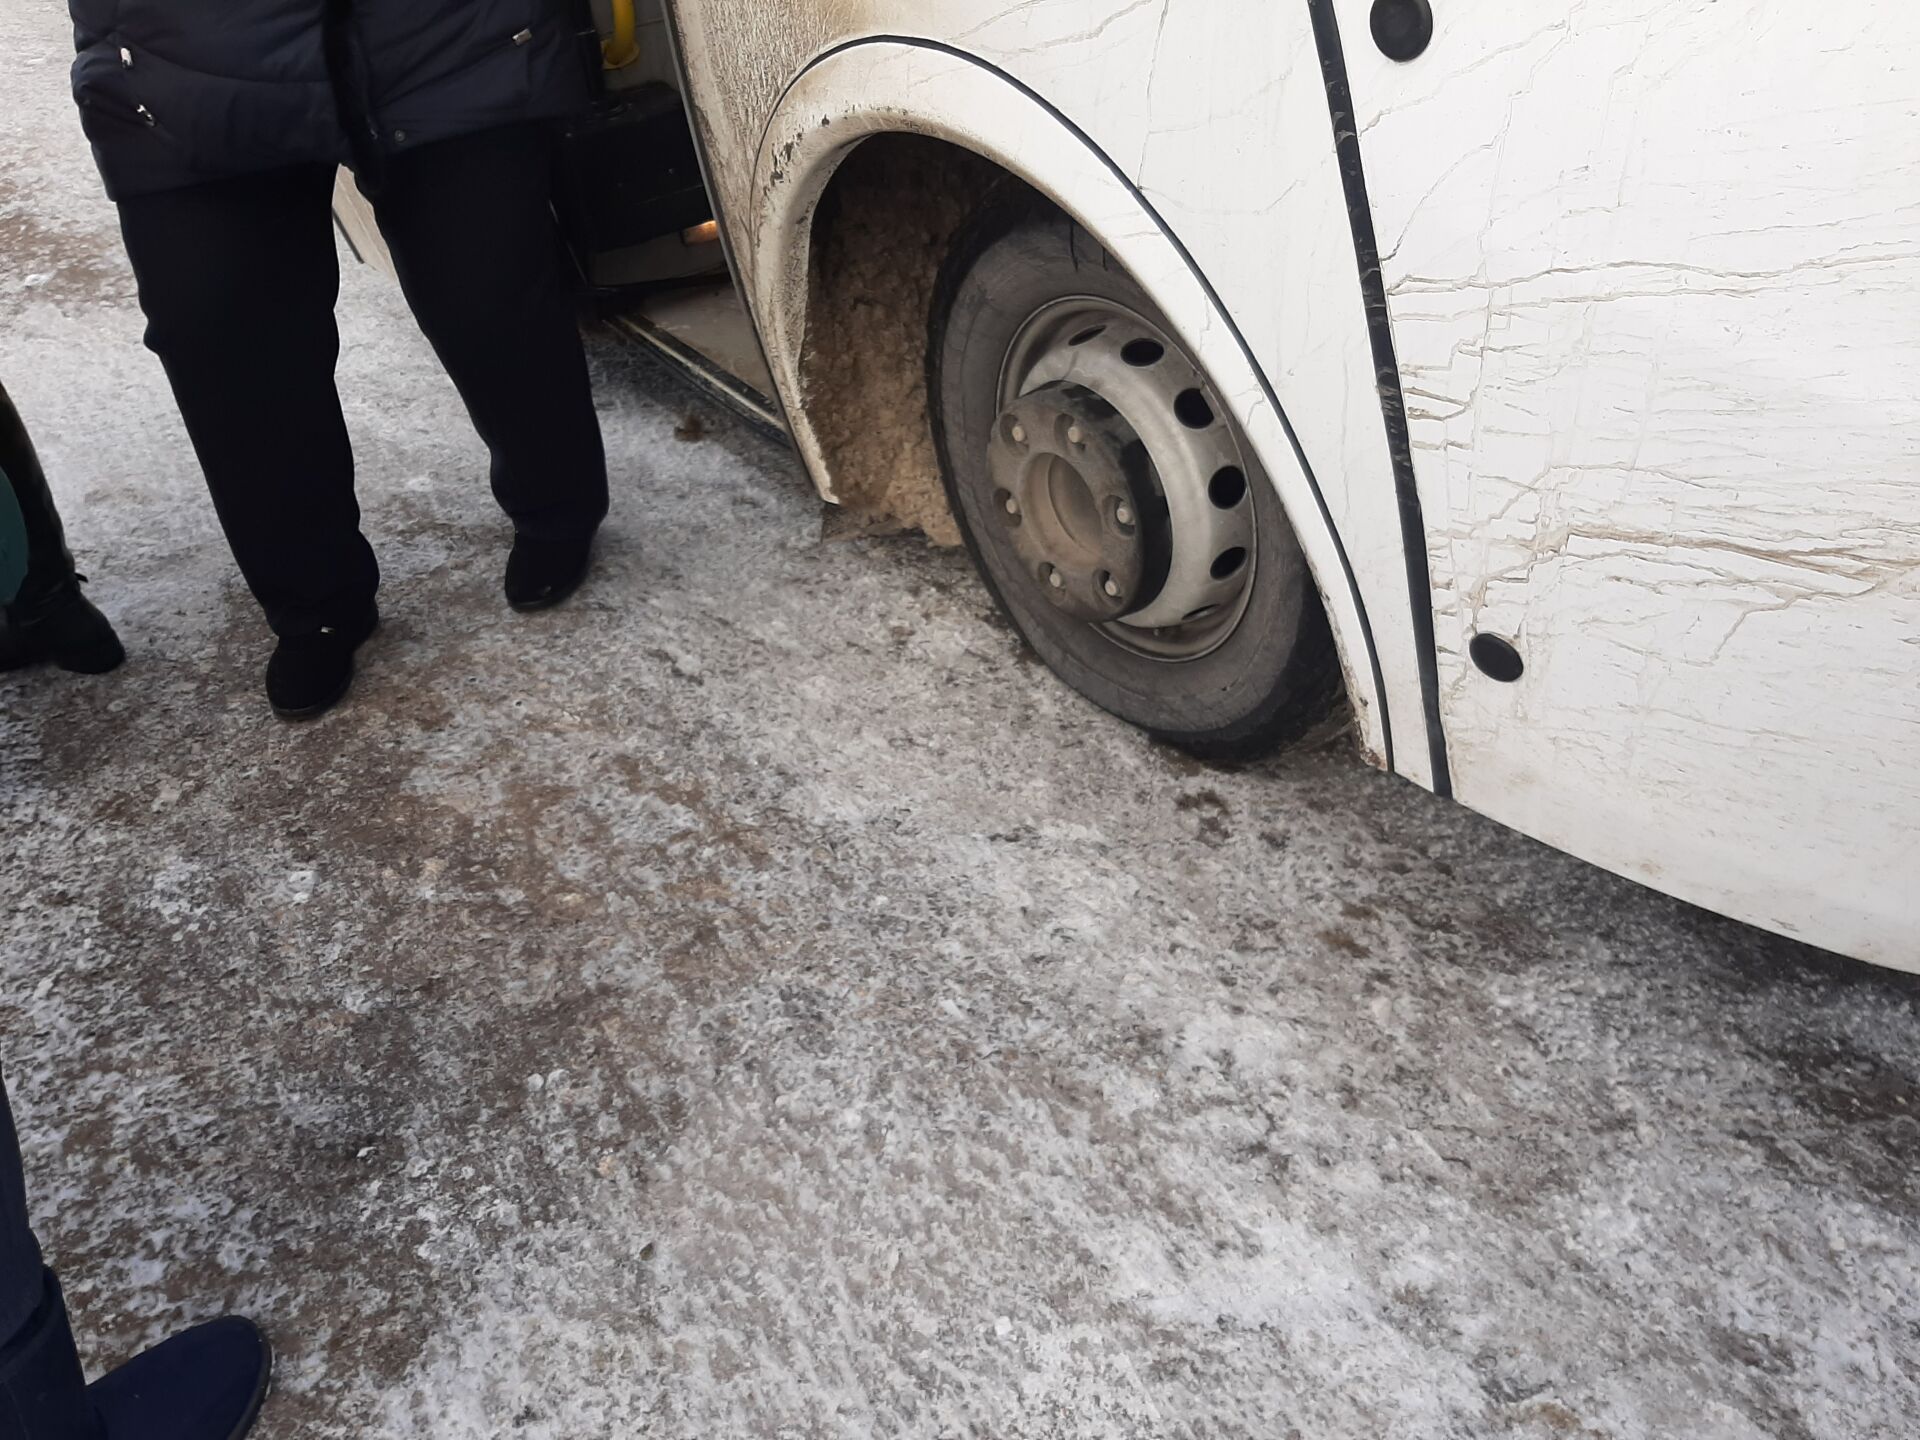 Сегодня пассажиры казанского рейса чудом не пострадали